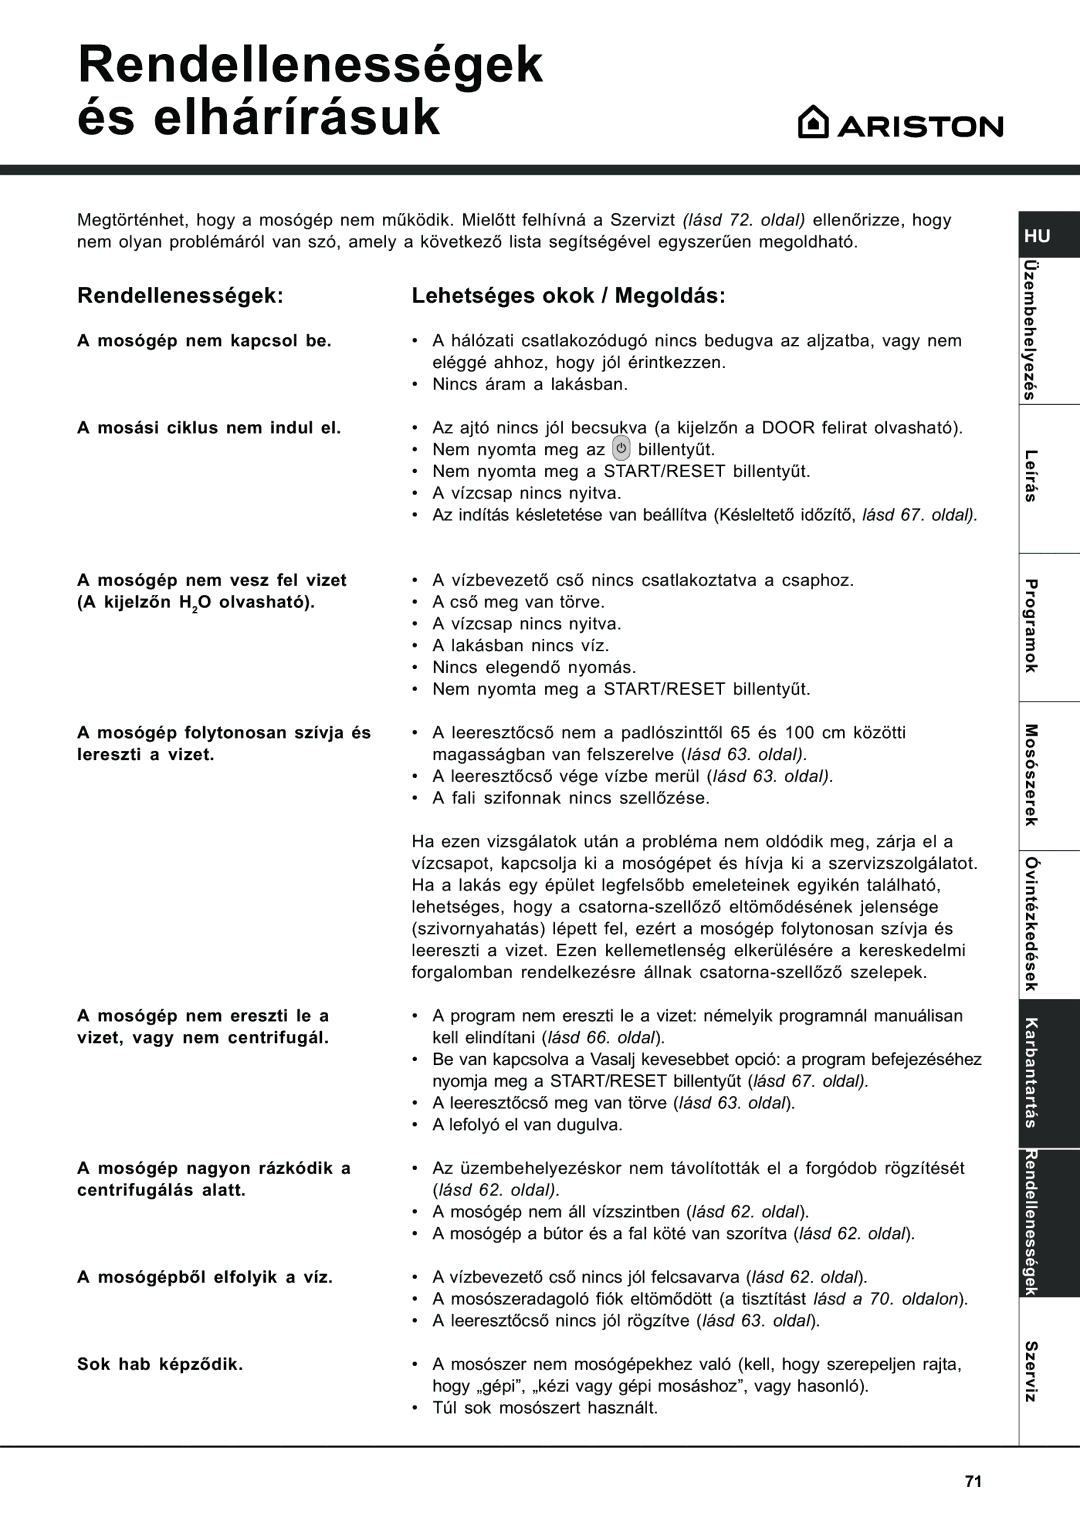 Ariston AVSD 109 manual Rendellenességek és elhárírásuk, Rendellenességek Lehetséges okok / Megoldás 